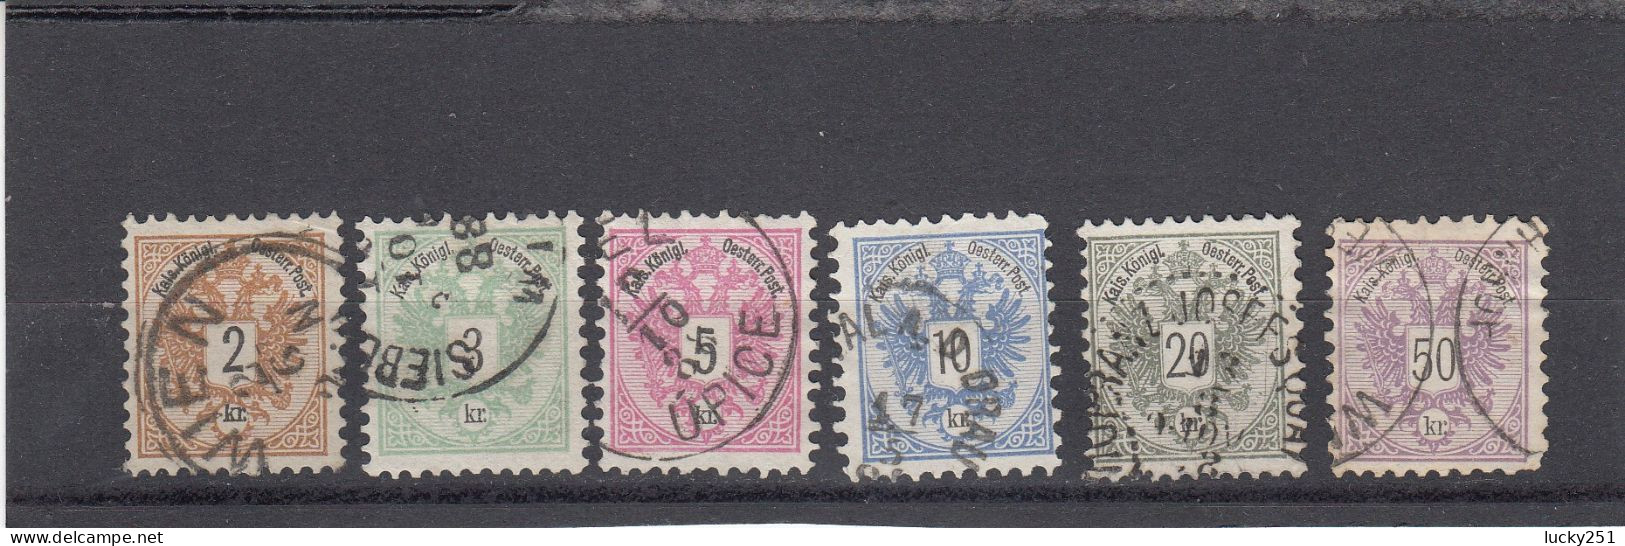 Autriche - Année 1883 - Obl. - Empire - N°YT 40 à 45 - Chiffre Noir - Used Stamps